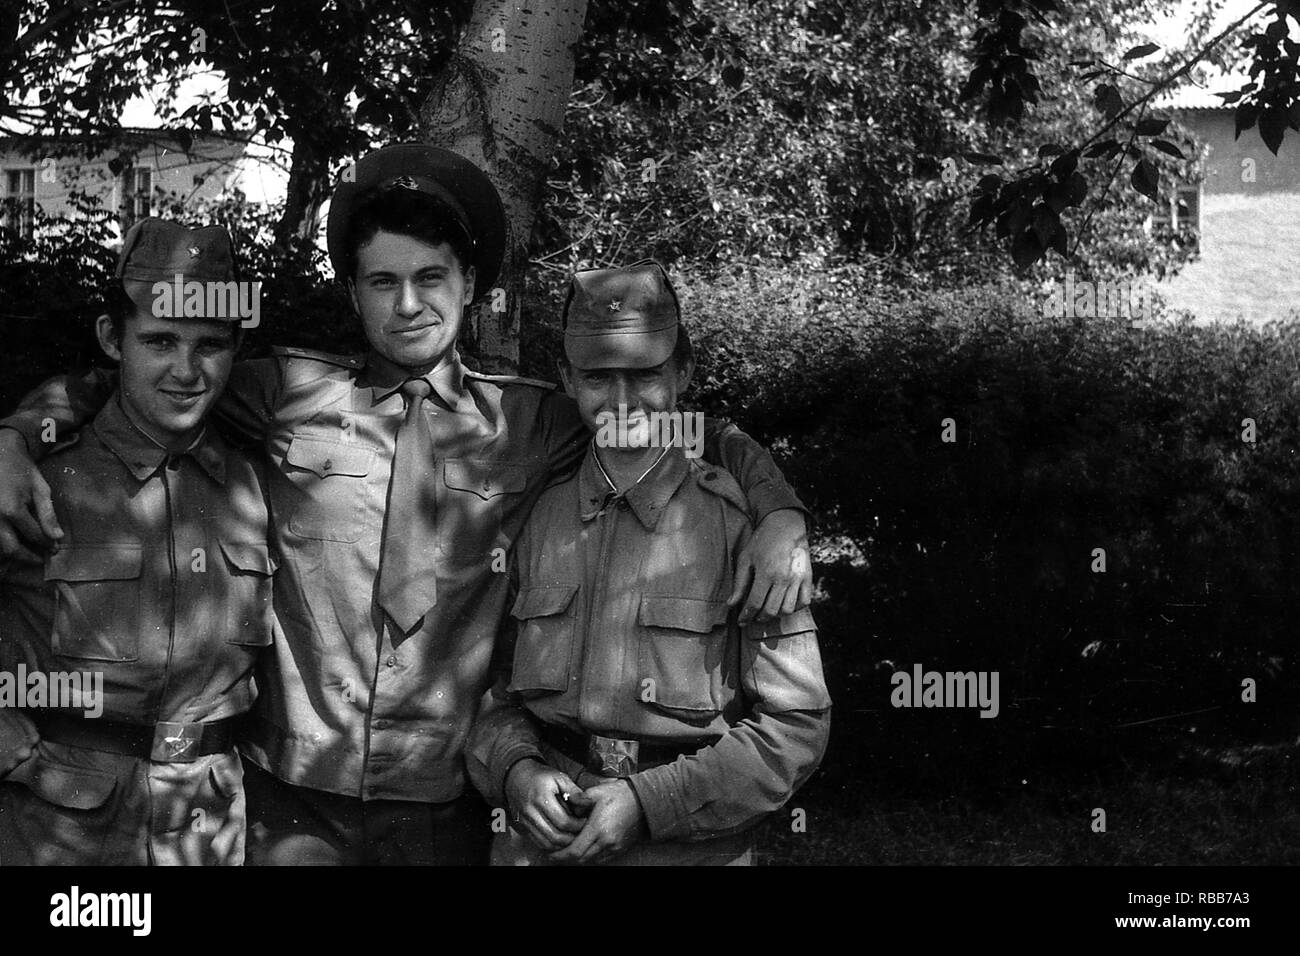 La région de Moscou, Russie - circa 1992 : Portrait de soldats de l'armée russe. Trois camarades. Numérisation de film. Les grosses. Banque D'Images